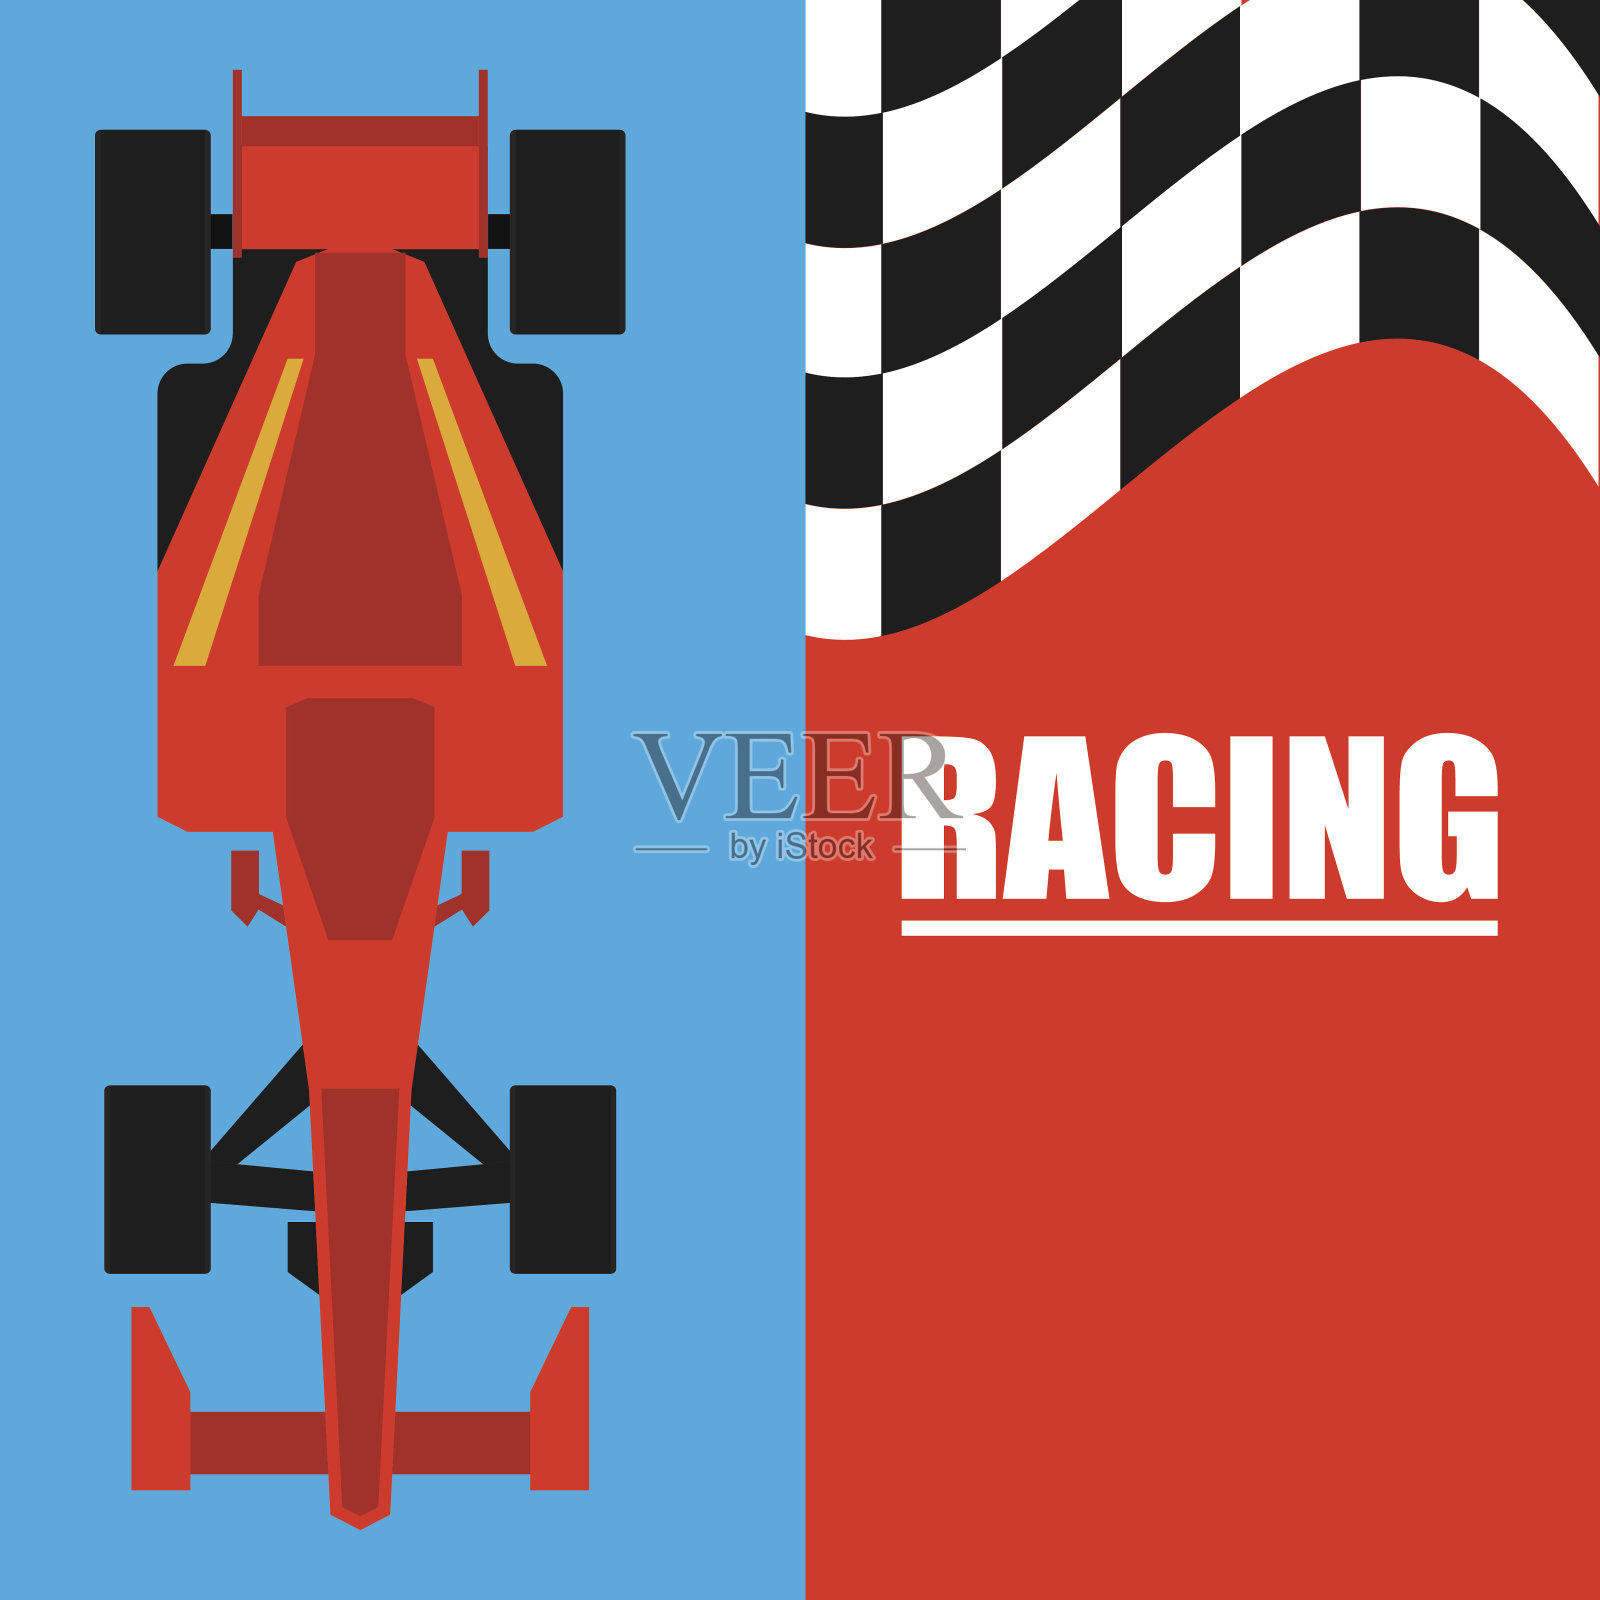 一级方程式/大奖赛赛车海报。矢量图插画图片素材